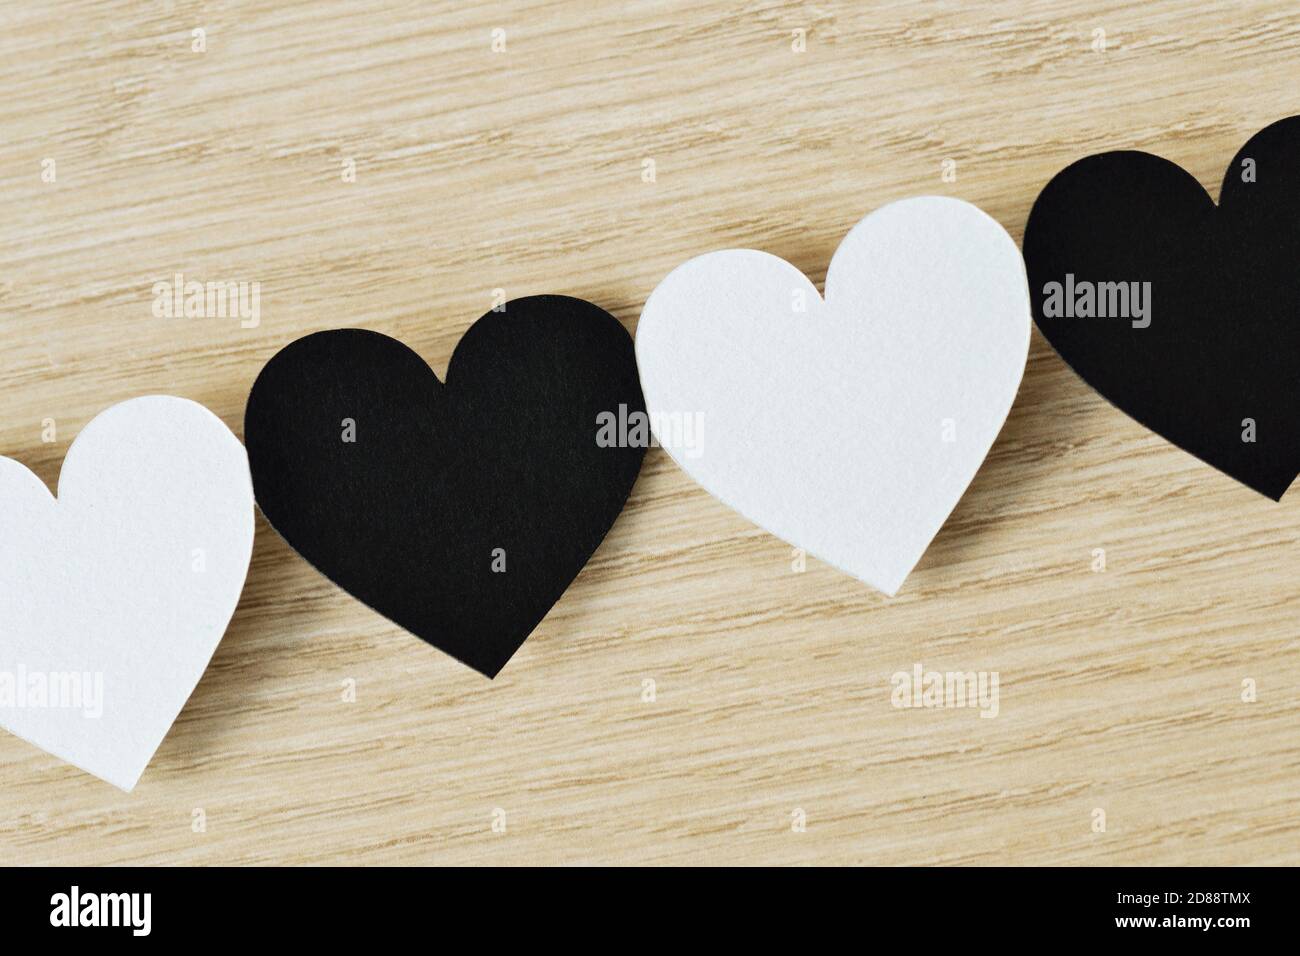 Schwarze und weiße Herzen in einer Kette miteinander verbunden - Anti-Rassismus-Konzept Stockfoto